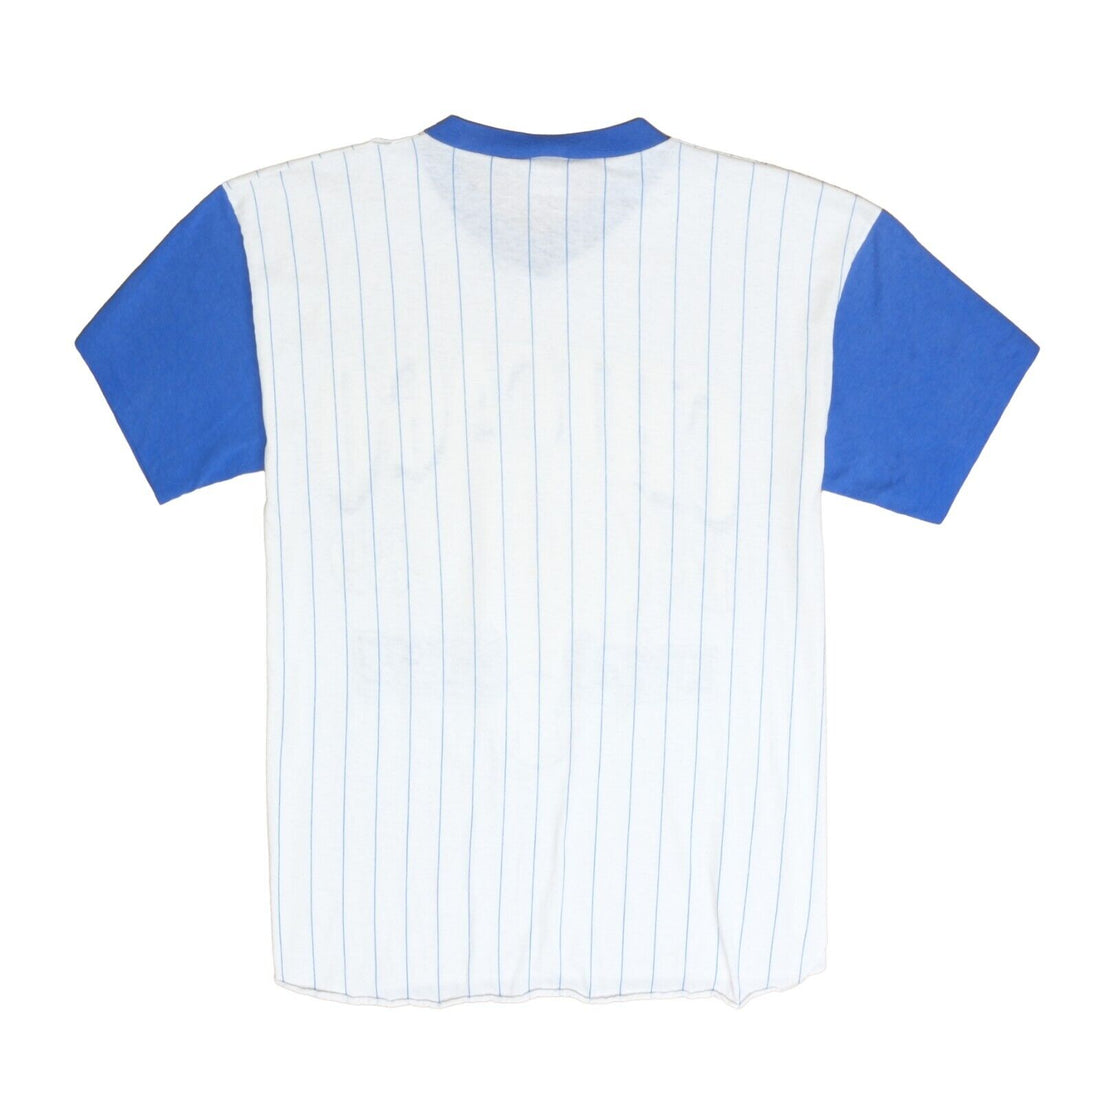 80s Chicago Cubs Jersey Shirt Size Medium 